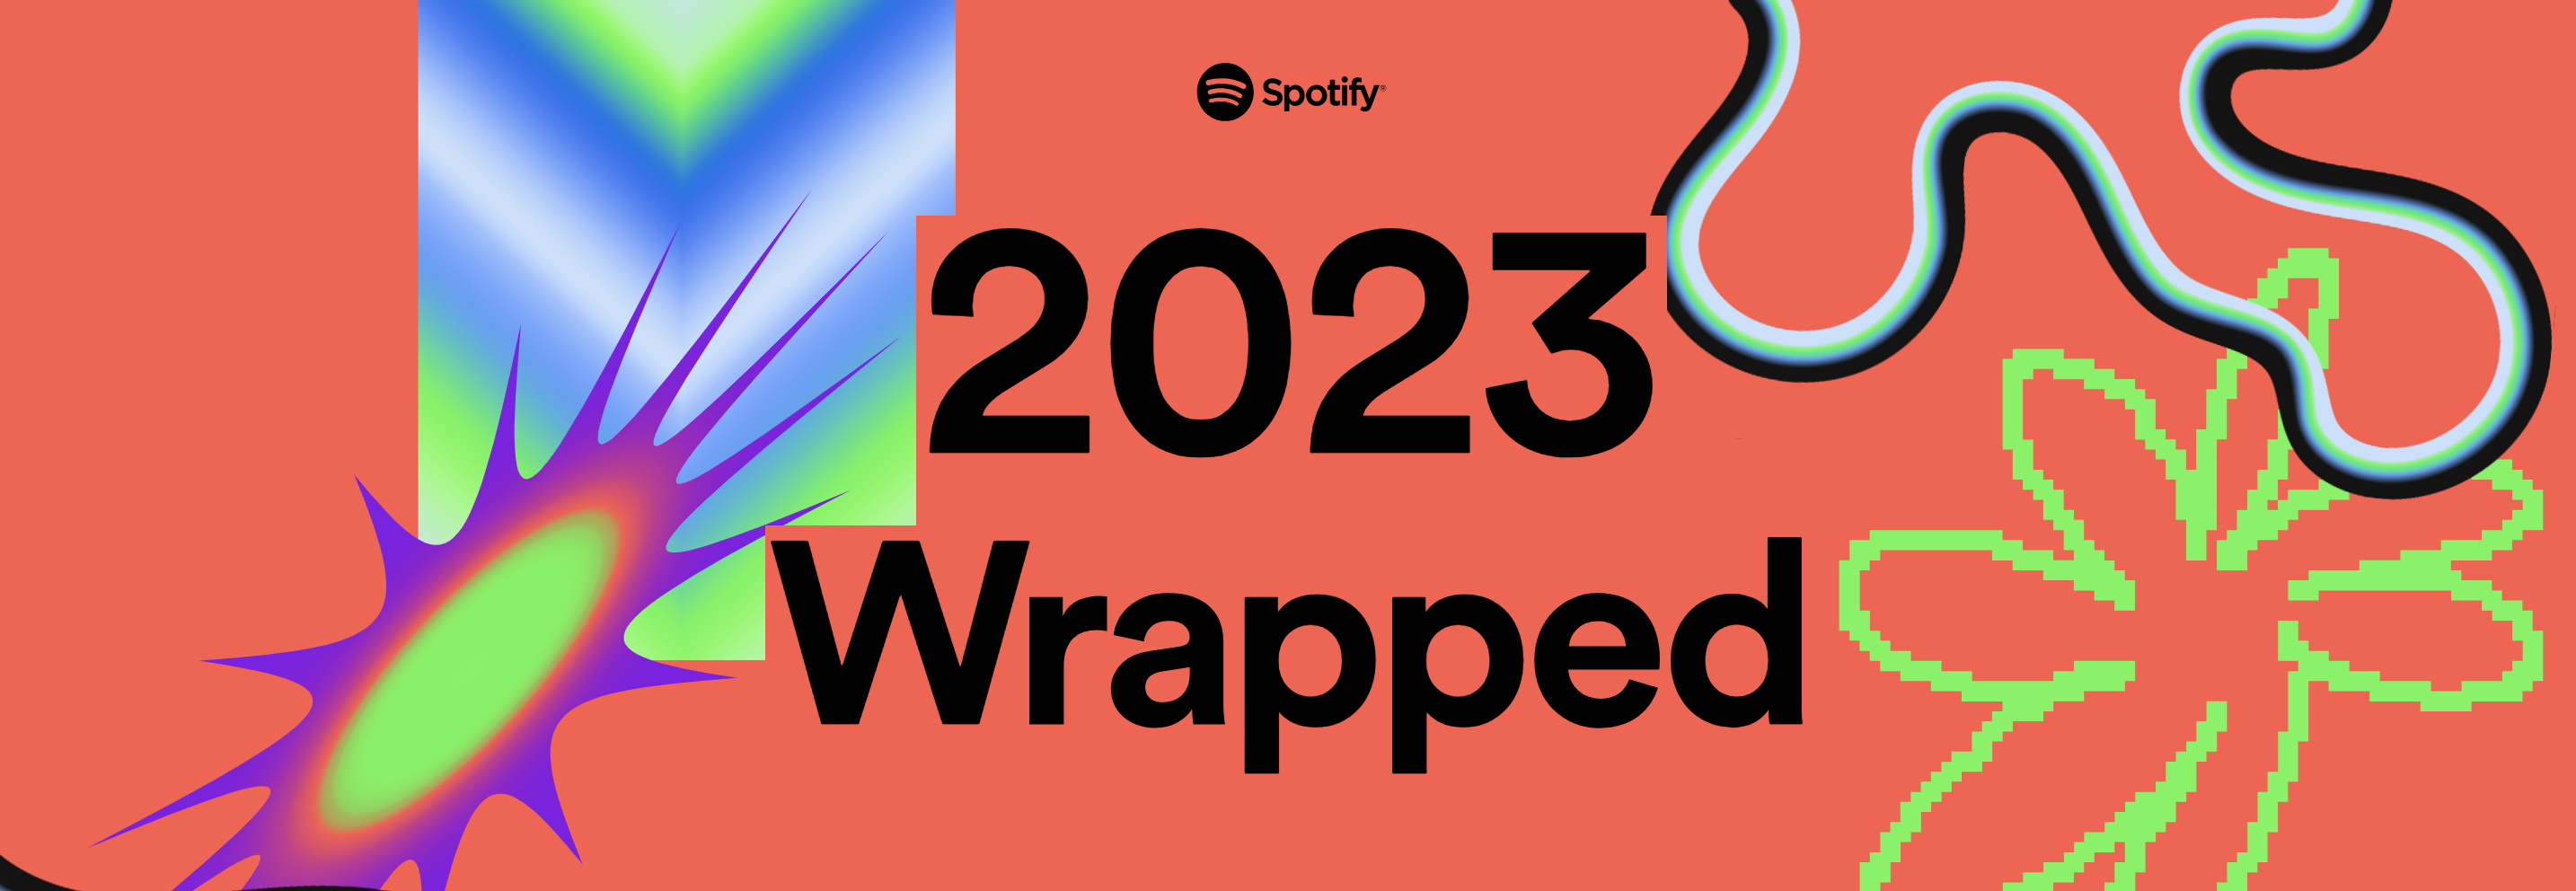 Promocyjna grafika Spotify Wrapped 2023 z abstrakcyjnymi kształtami i wzorami na czerwonym tle.